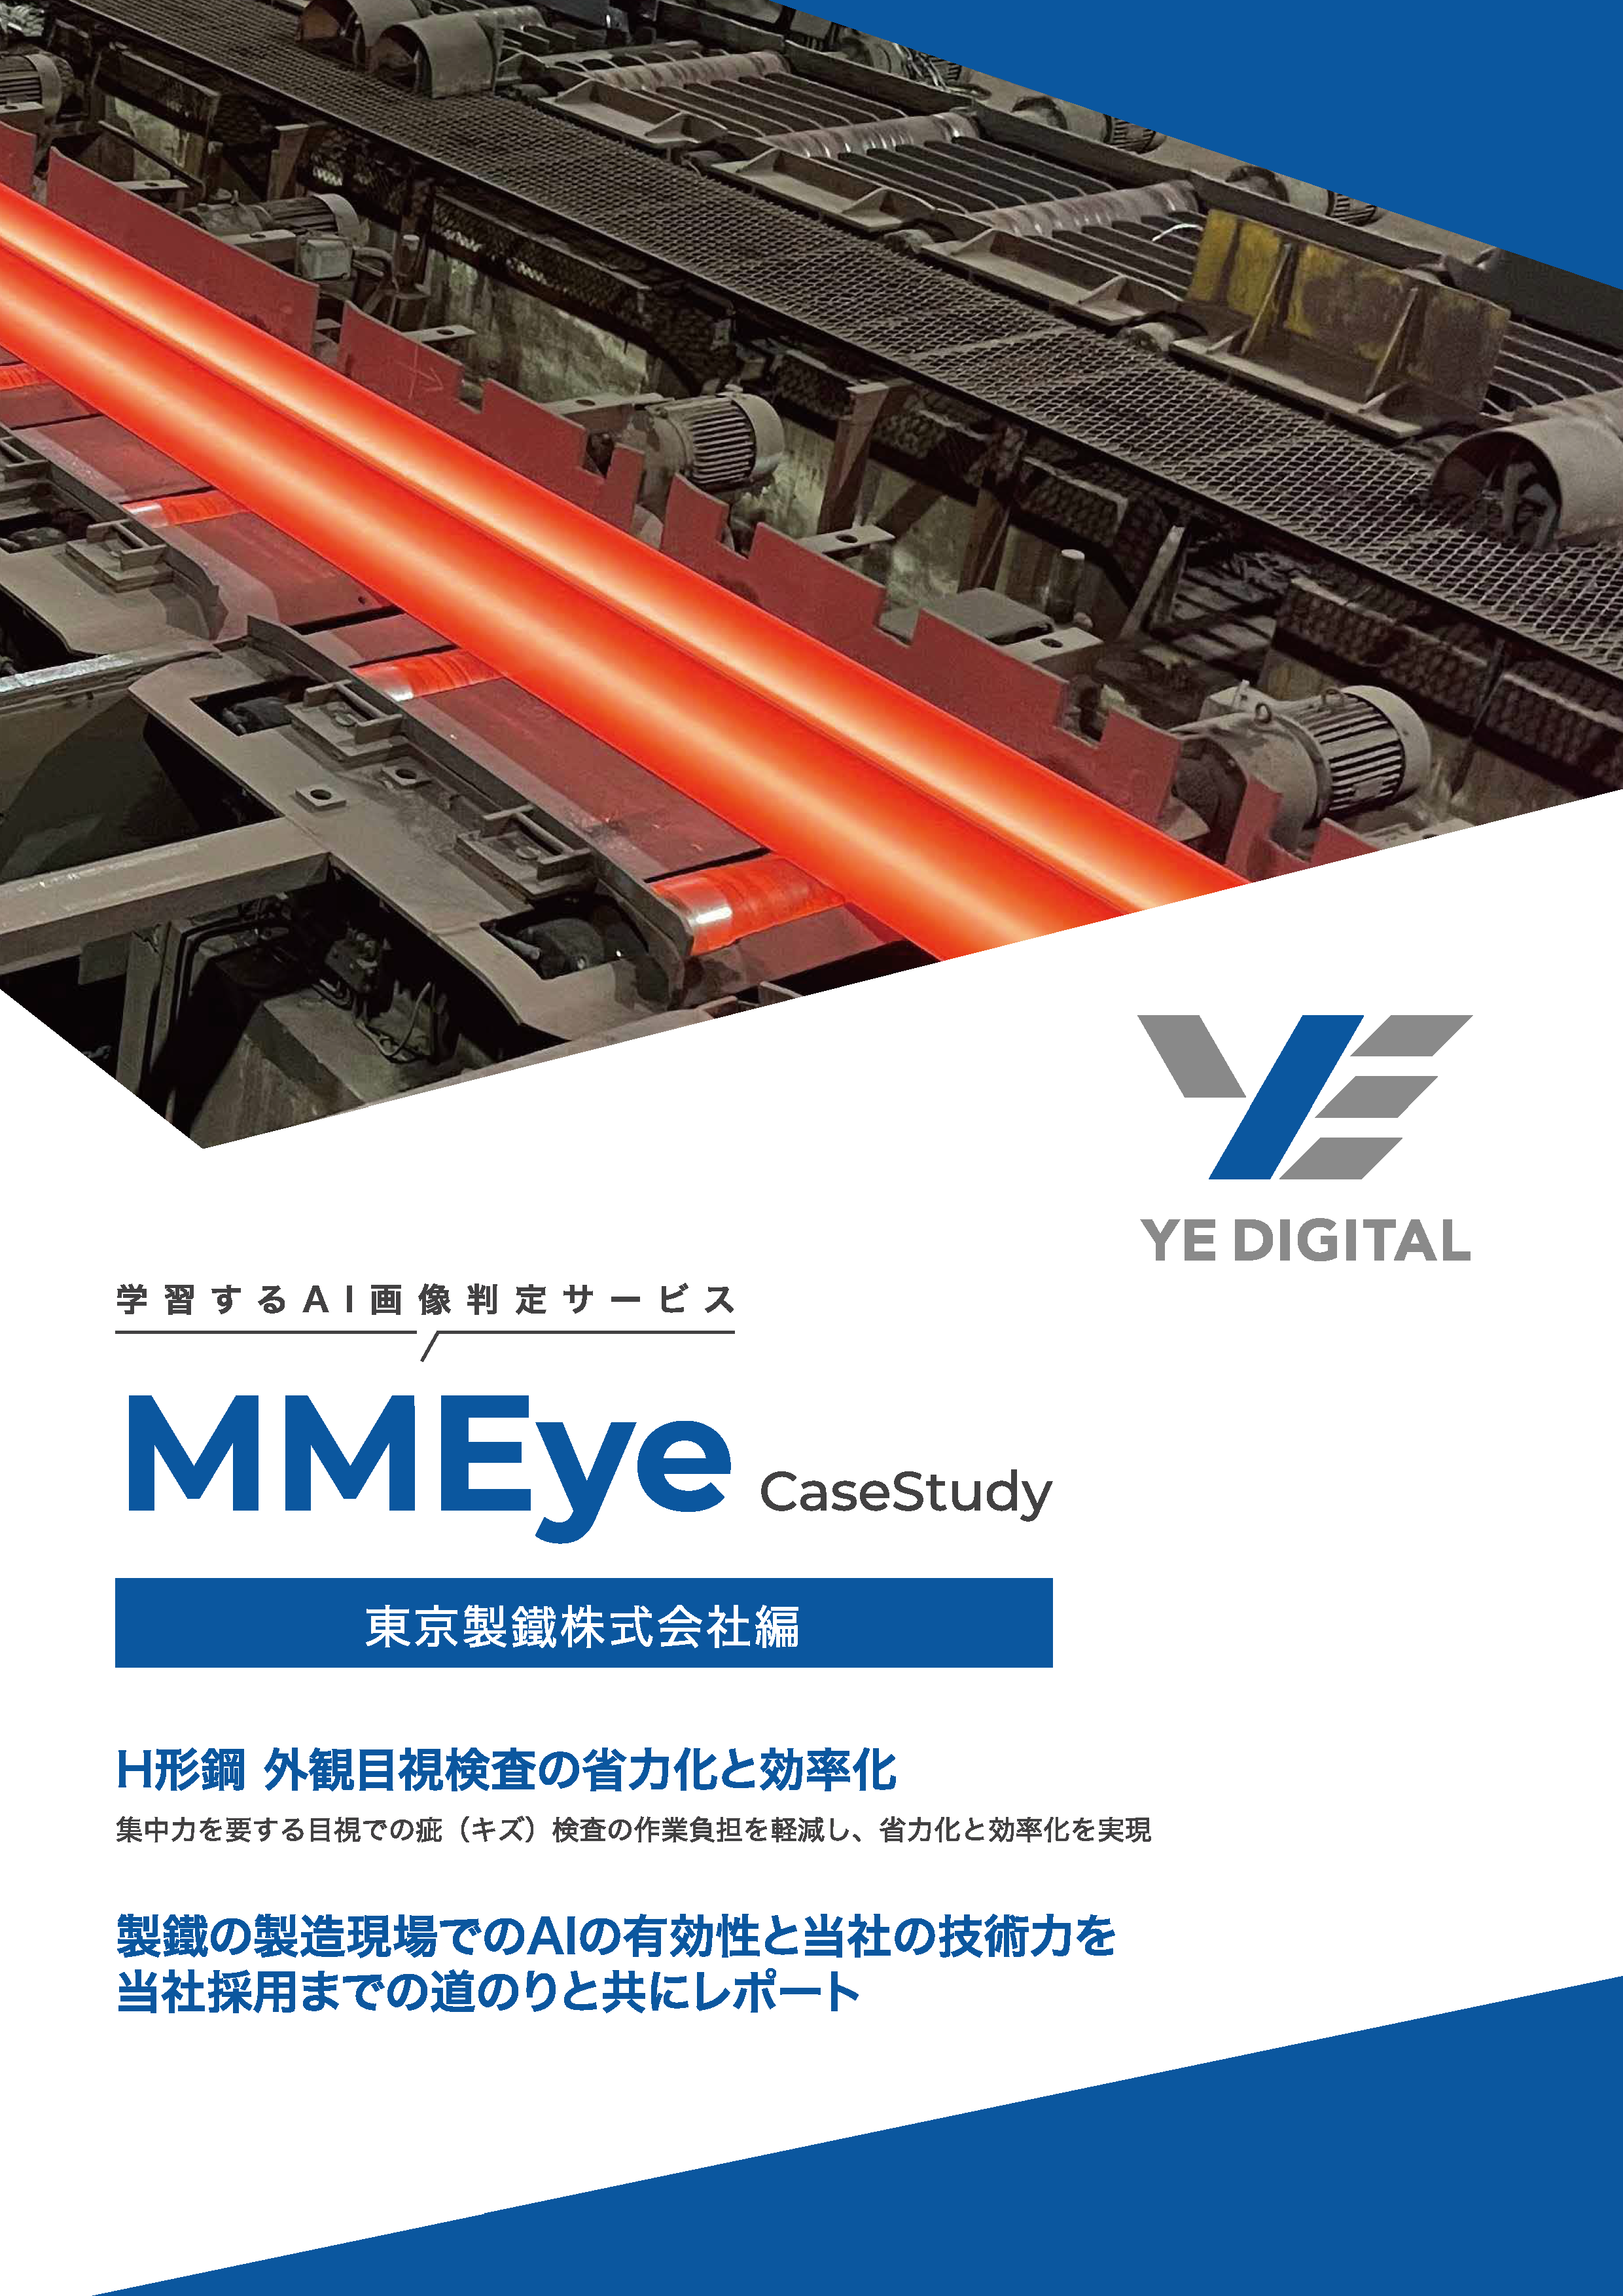 【東京製鐵株式会社様】H形鋼 外観目視検査の省力化と効率化